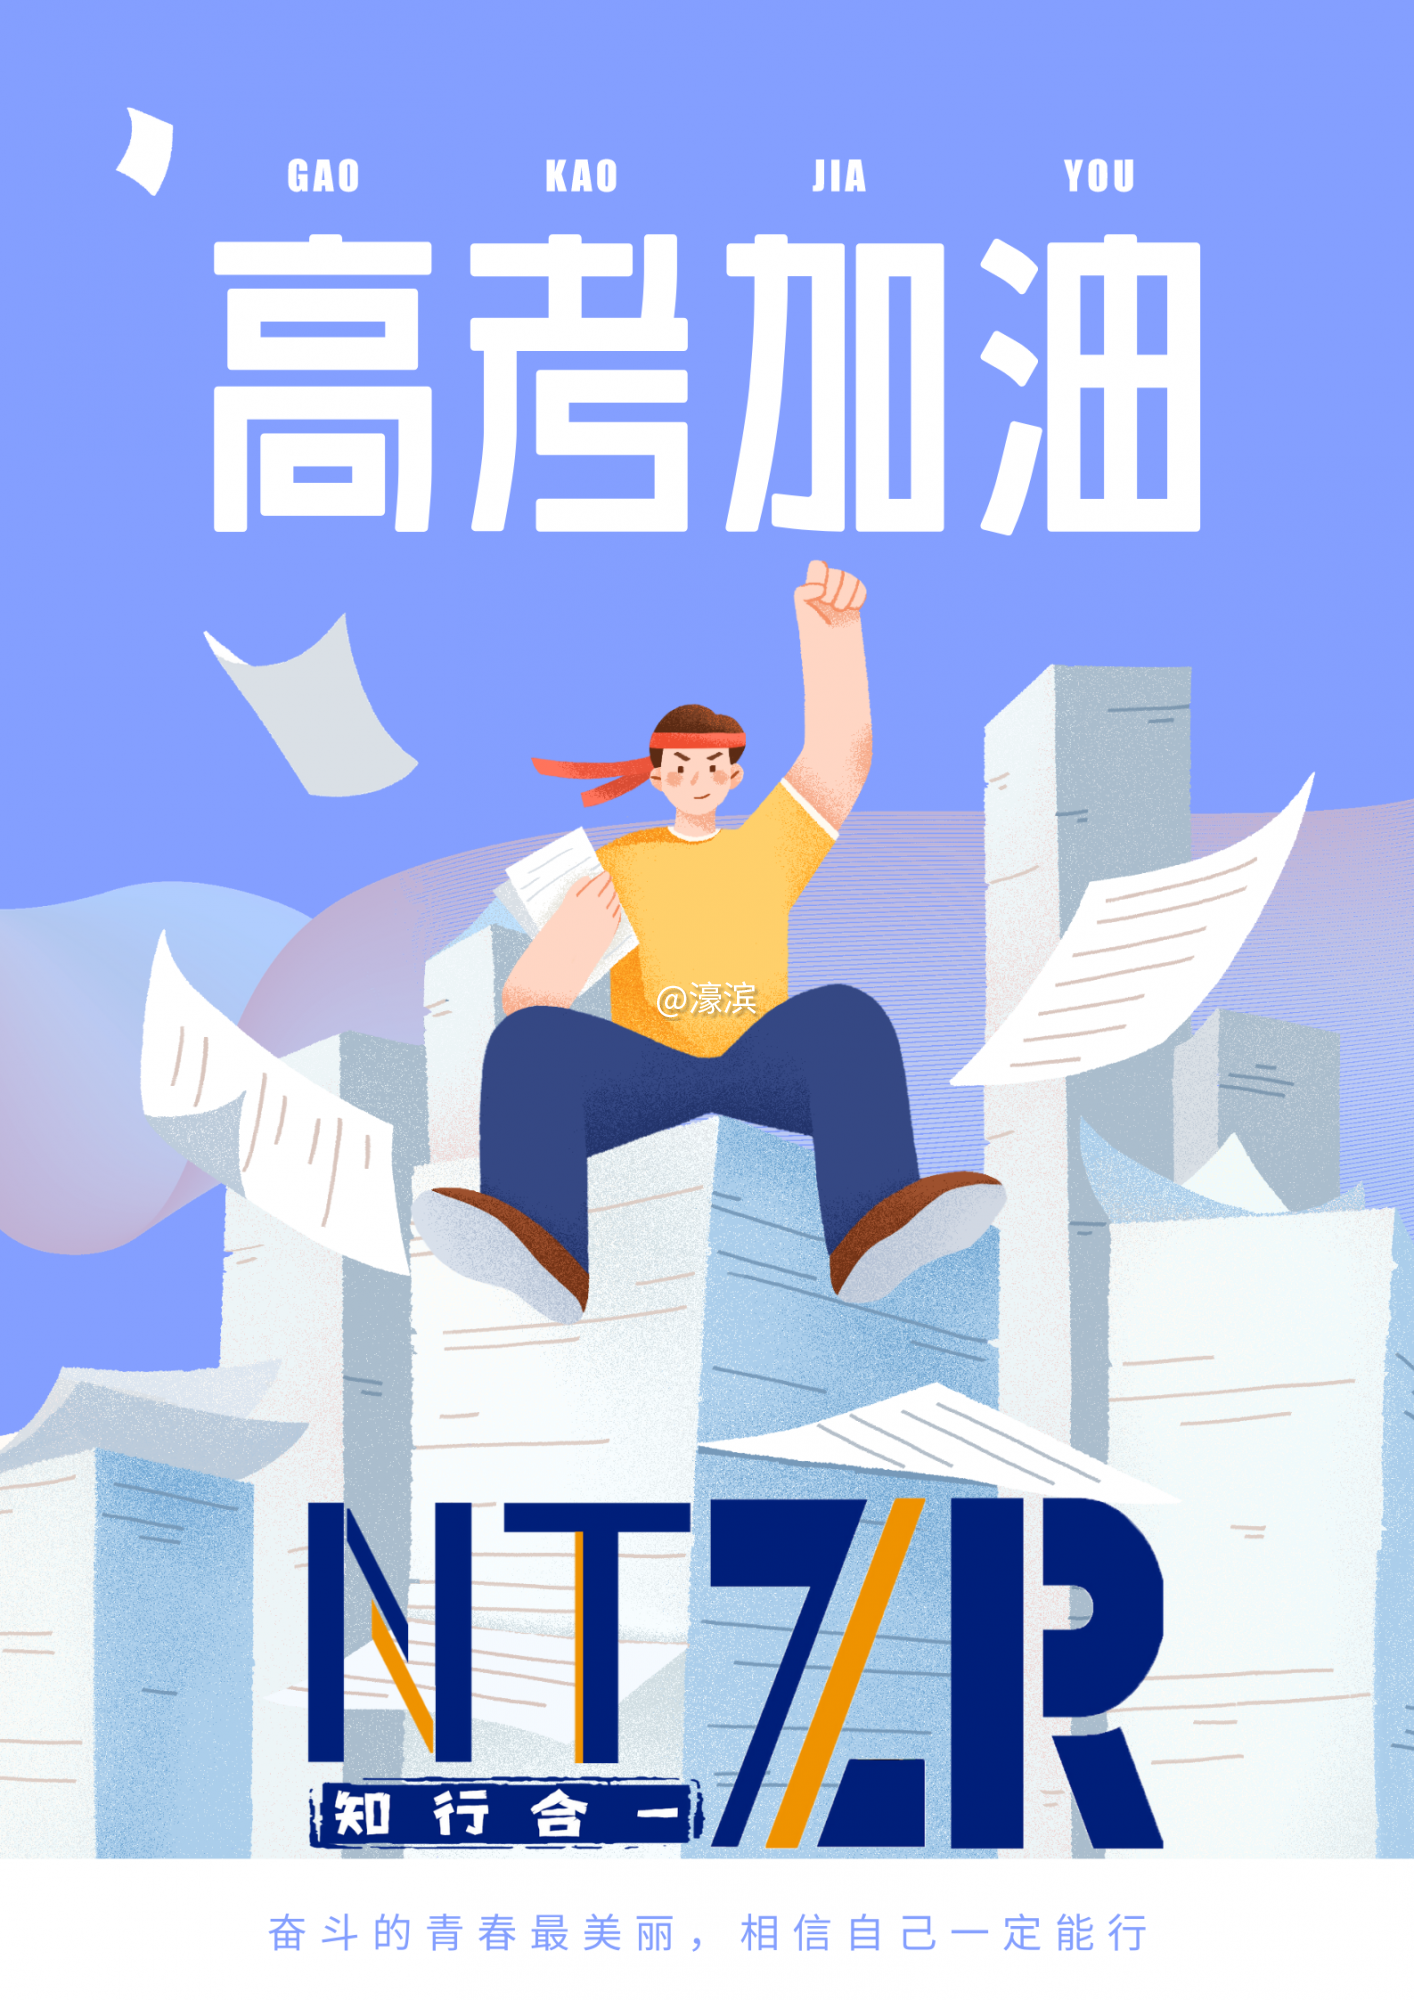 蓝白色高考加油试卷堆举手胜利插画手绘高考节日分享中文海报(1).png